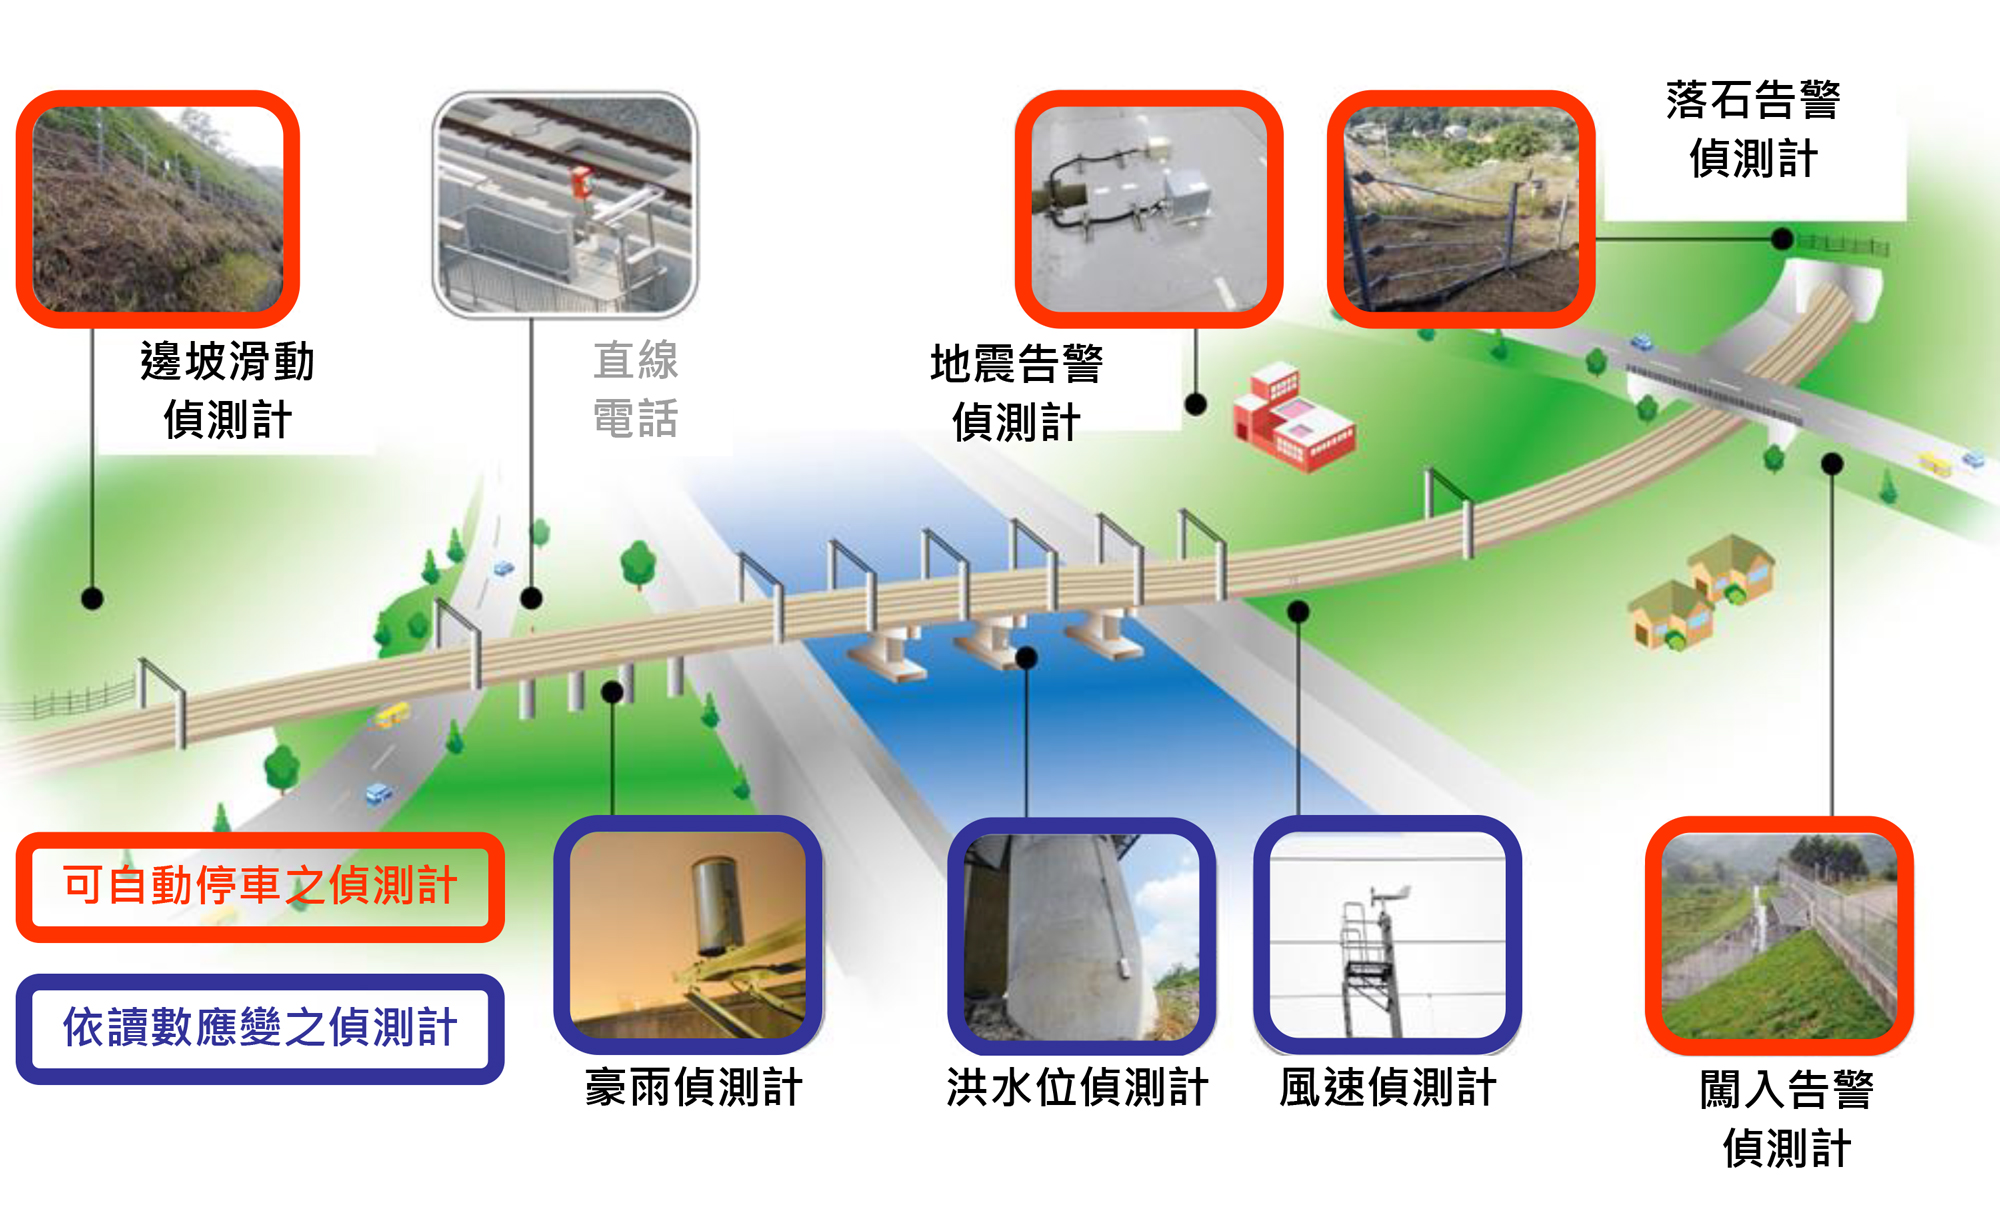 台灣高鐵DWS系統各偵測項目設置位置分布圖示(同文字說明)